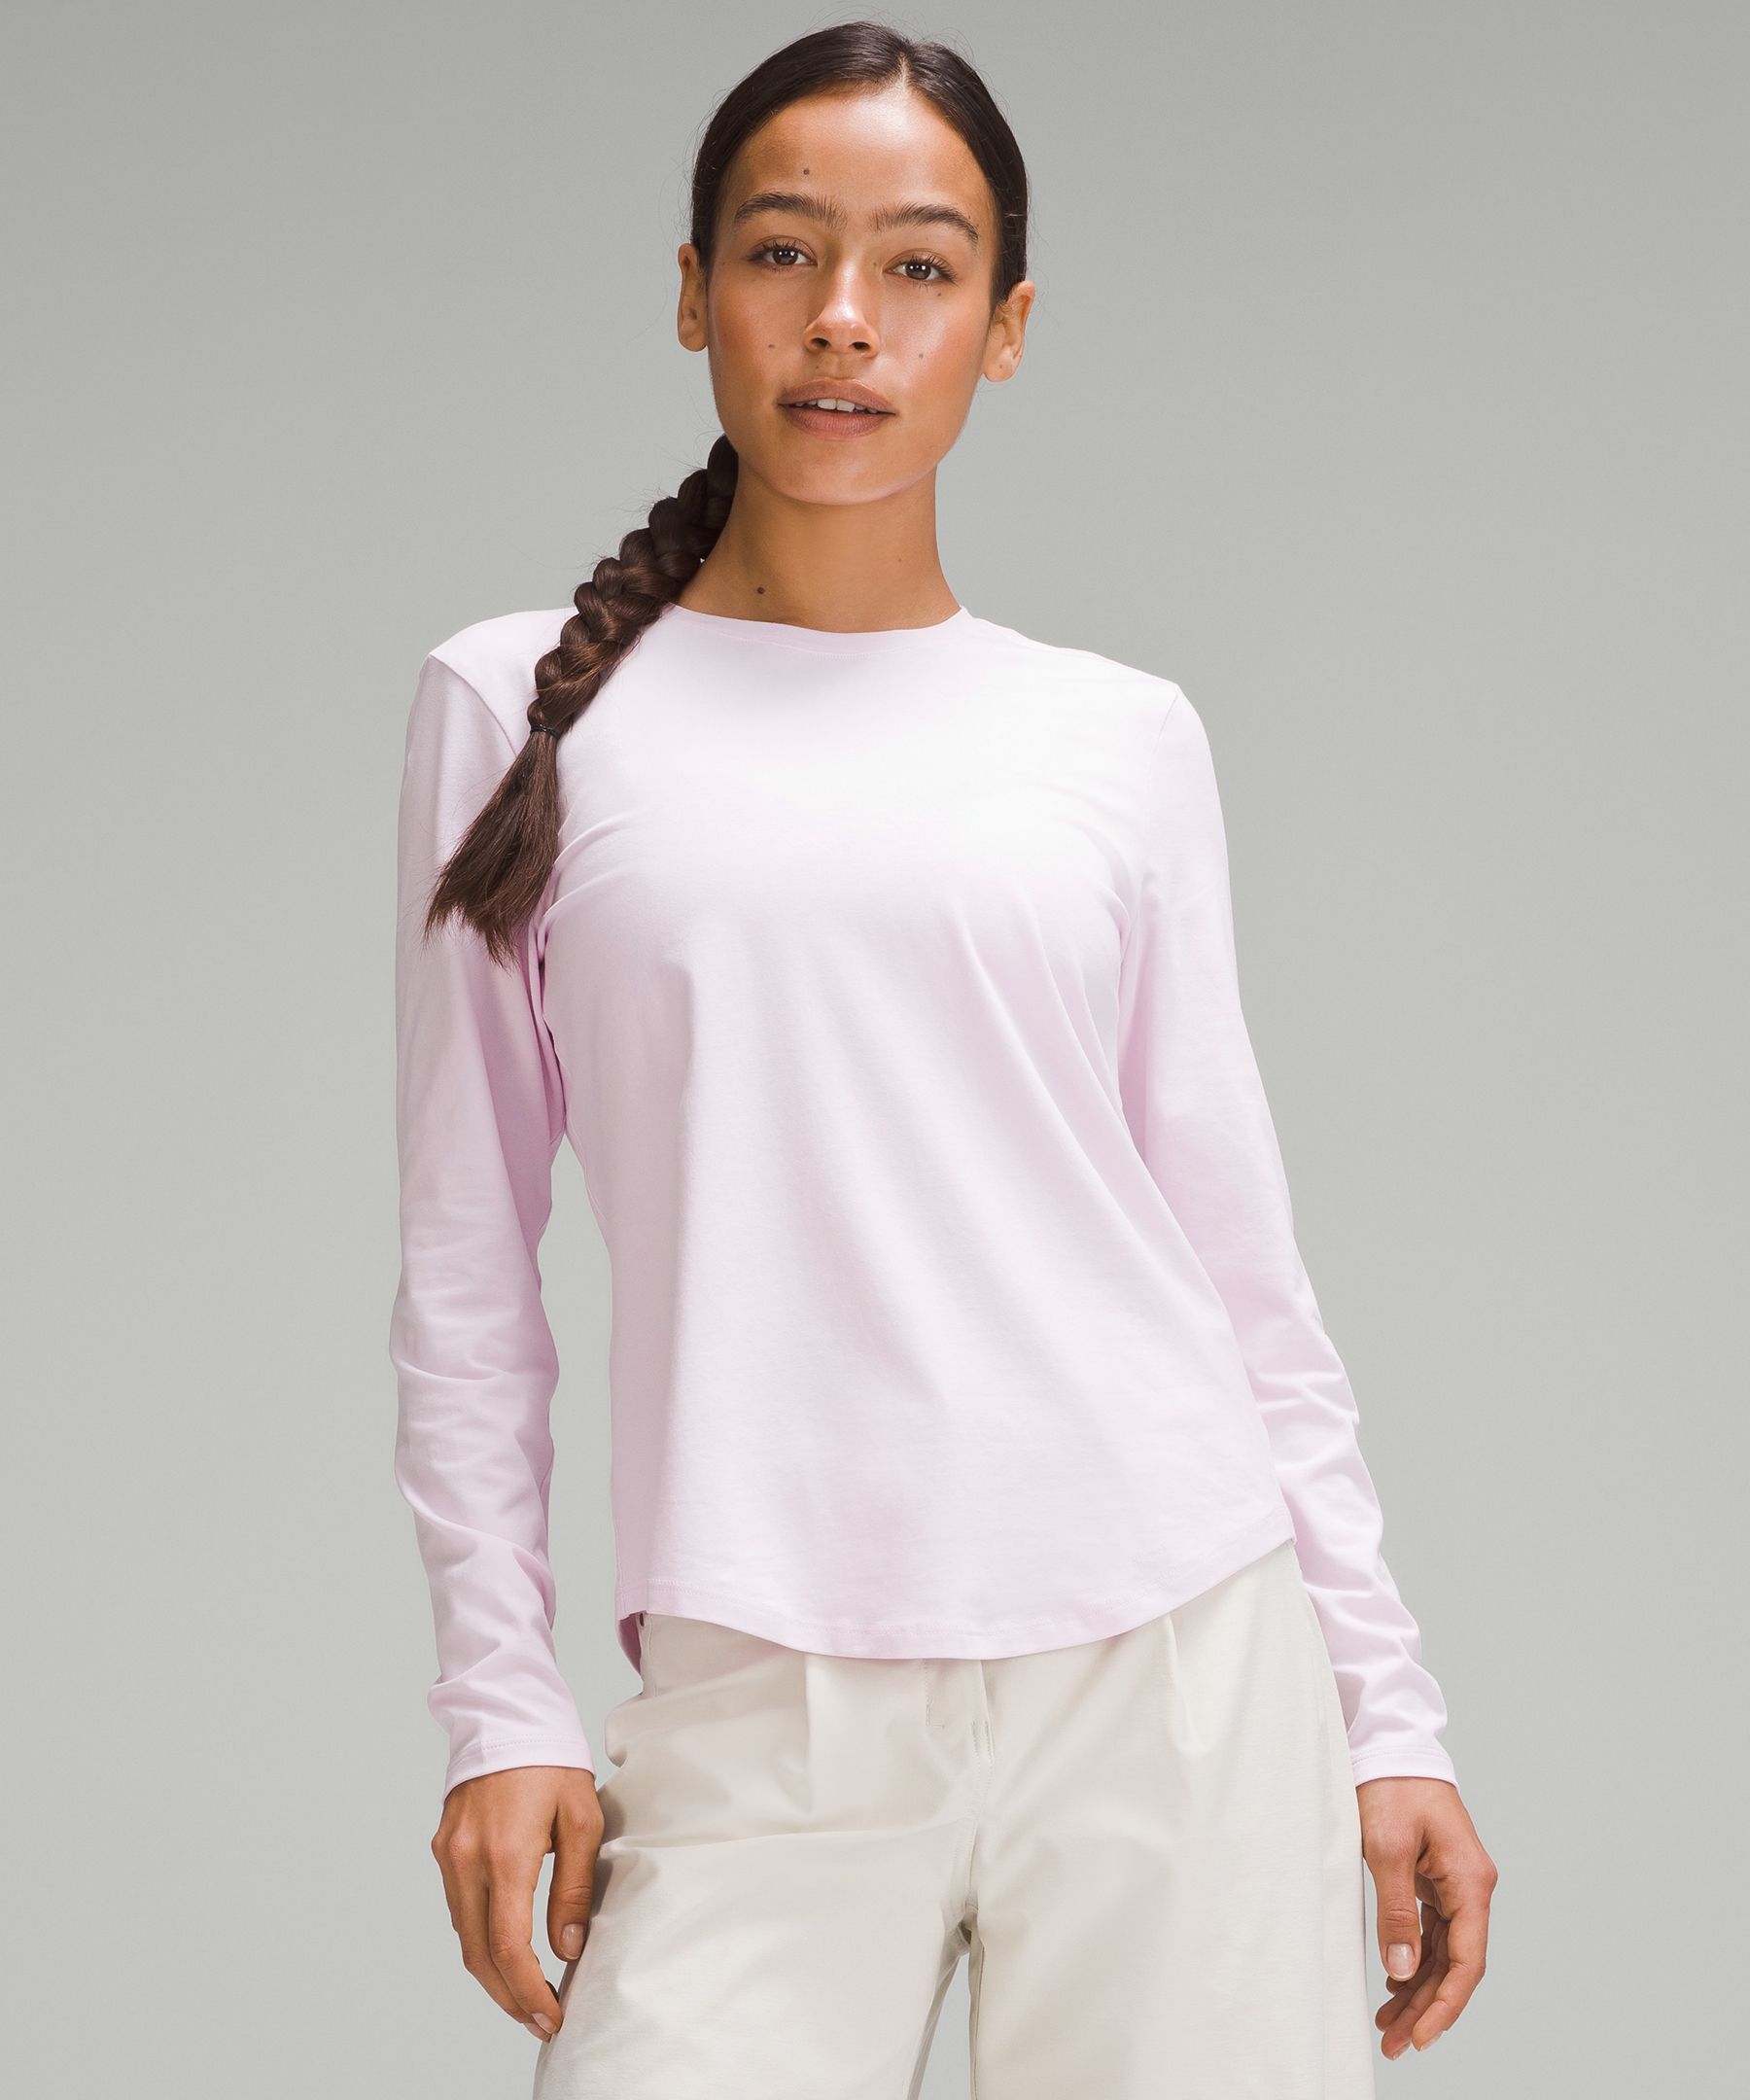 Lululemon Love Long-Sleeve Shirt - White - Size 14 Pima Cotton Fabric